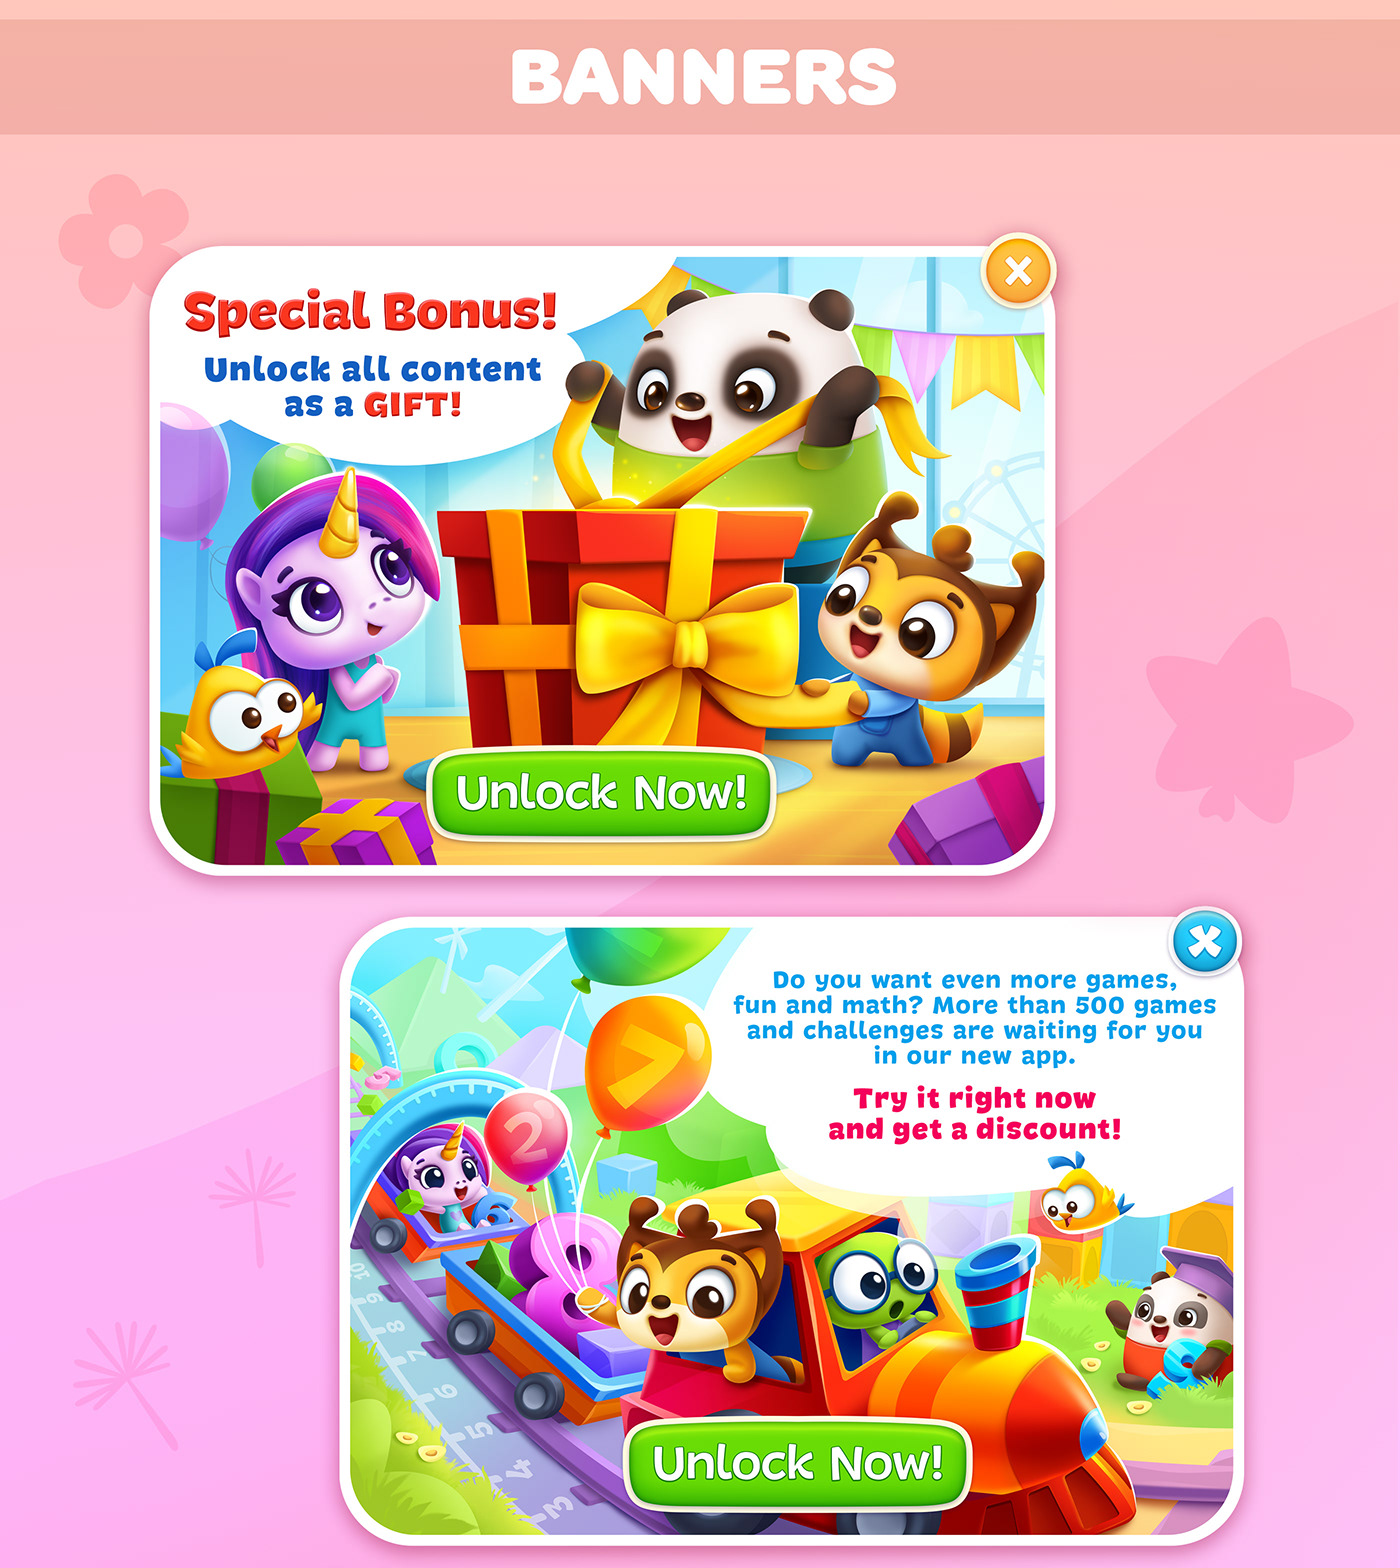 mobile game Character design  Icon screenshot Promotion banner children illustration kids illustration game design  UI/UX